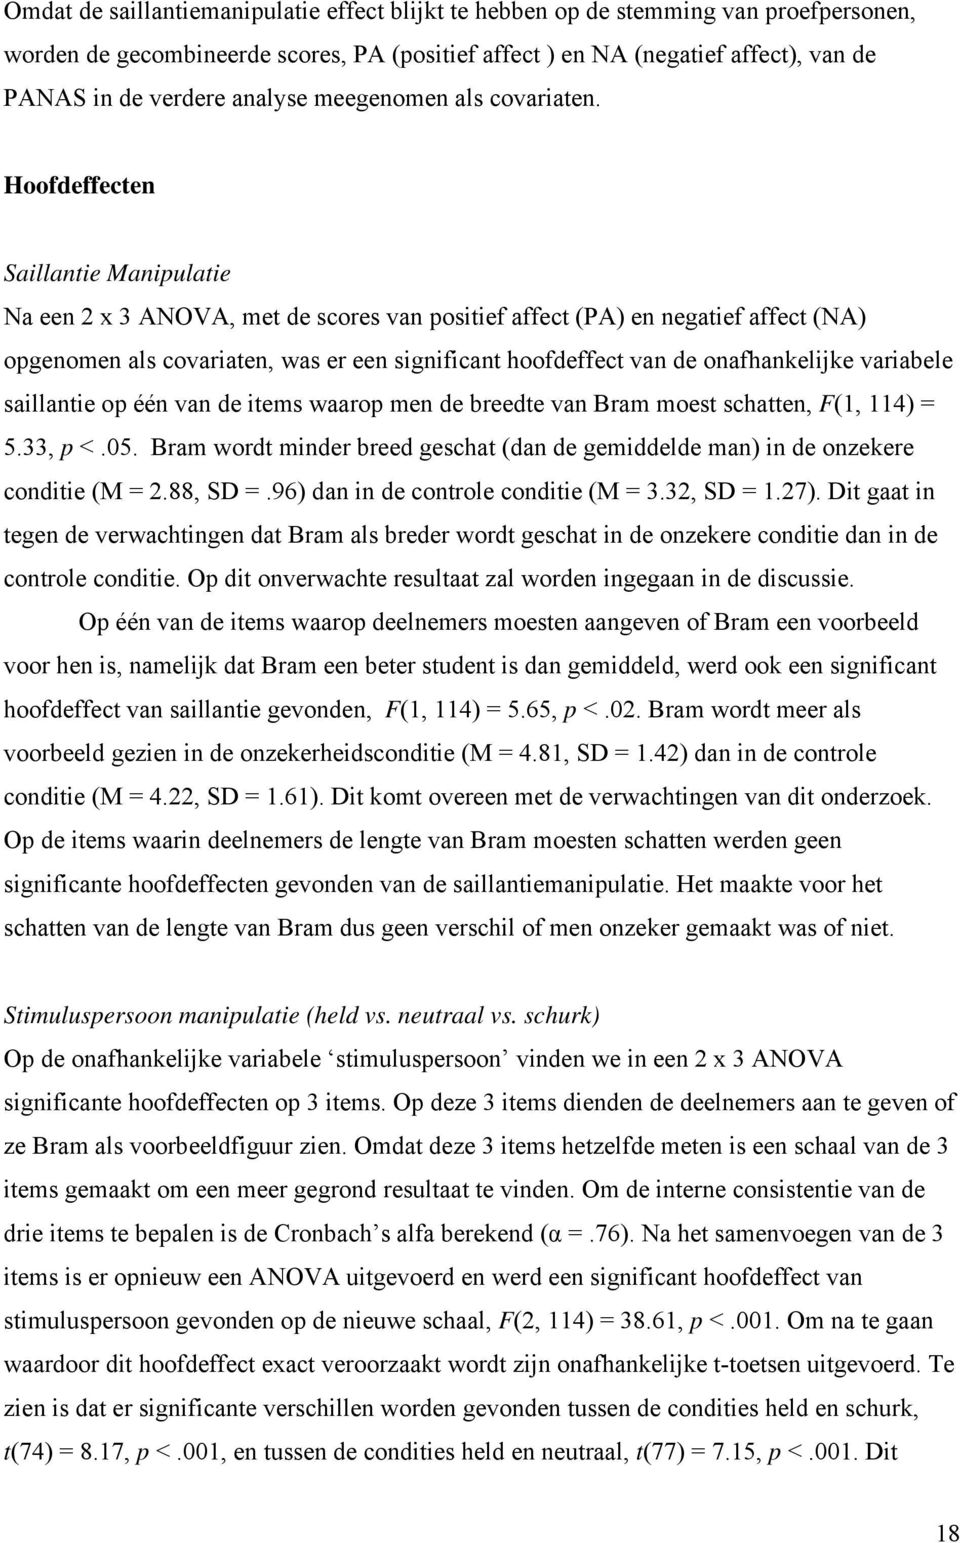 Hoofdeffecten Saillantie Manipulatie Na een 2 x 3 ANOVA, met de scores van positief affect (PA) en negatief affect (NA) opgenomen als covariaten, was er een significant hoofdeffect van de